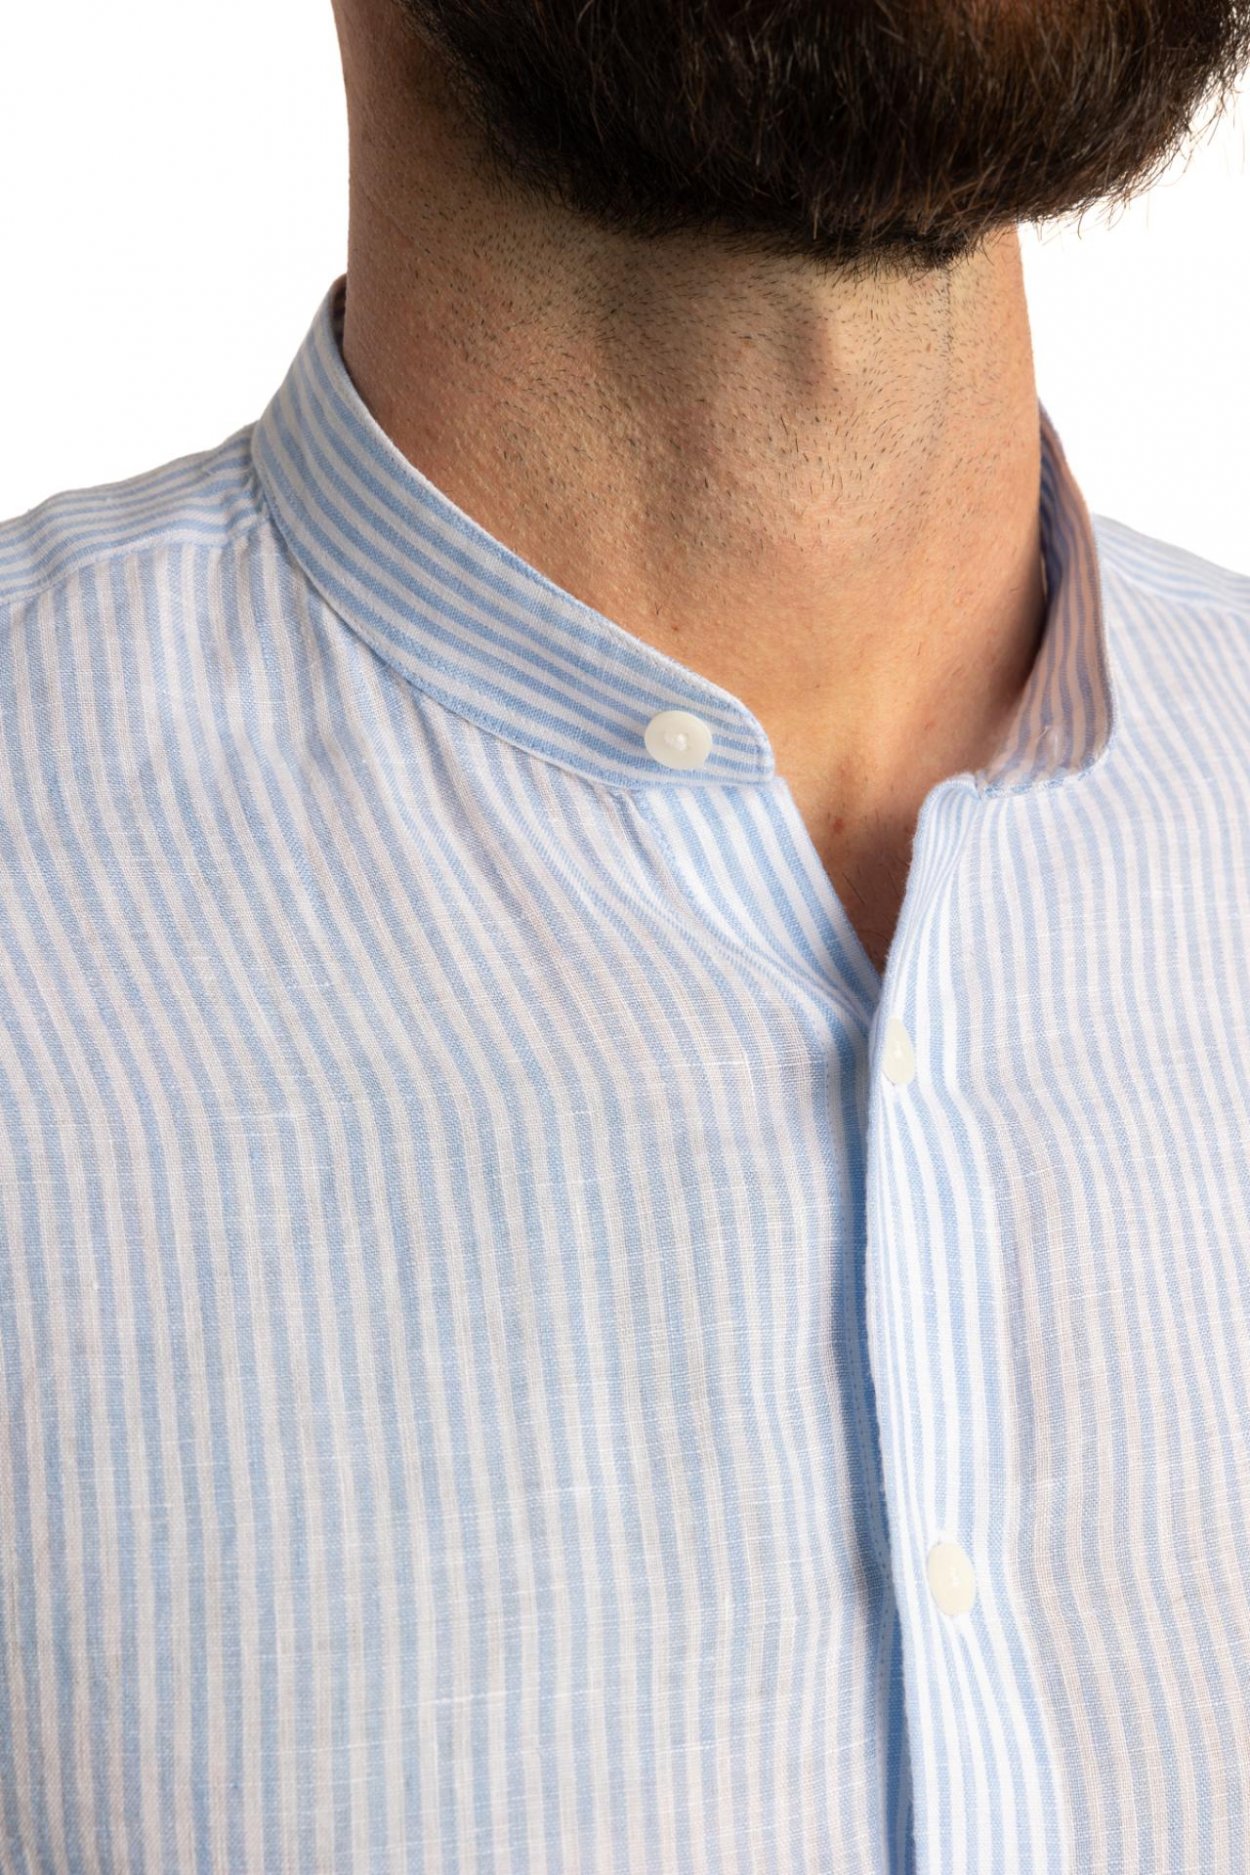 Pánská modrobílá lněná košile s proužkem